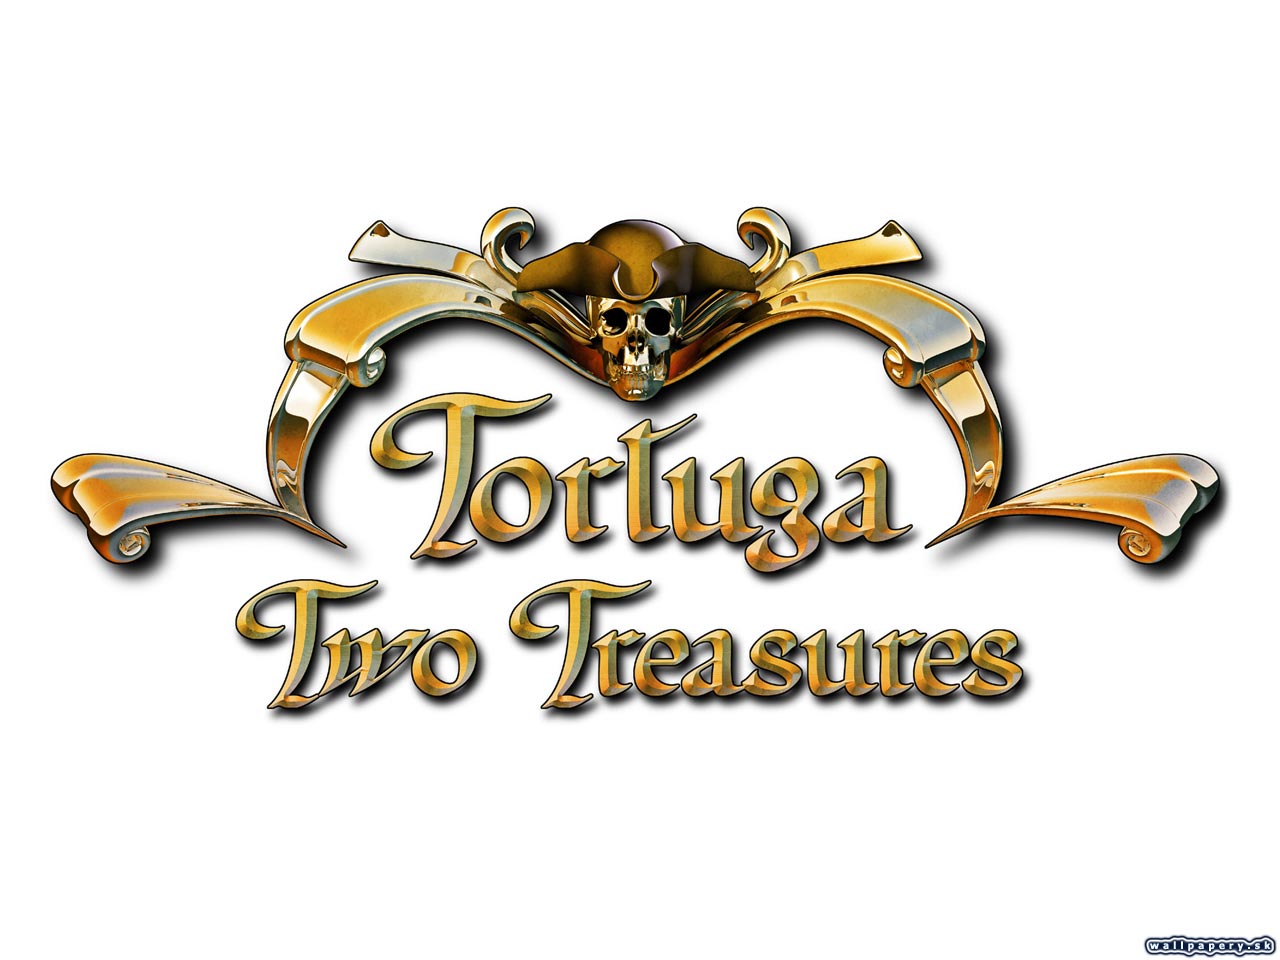 Tortuga: Two Treasures - wallpaper 20